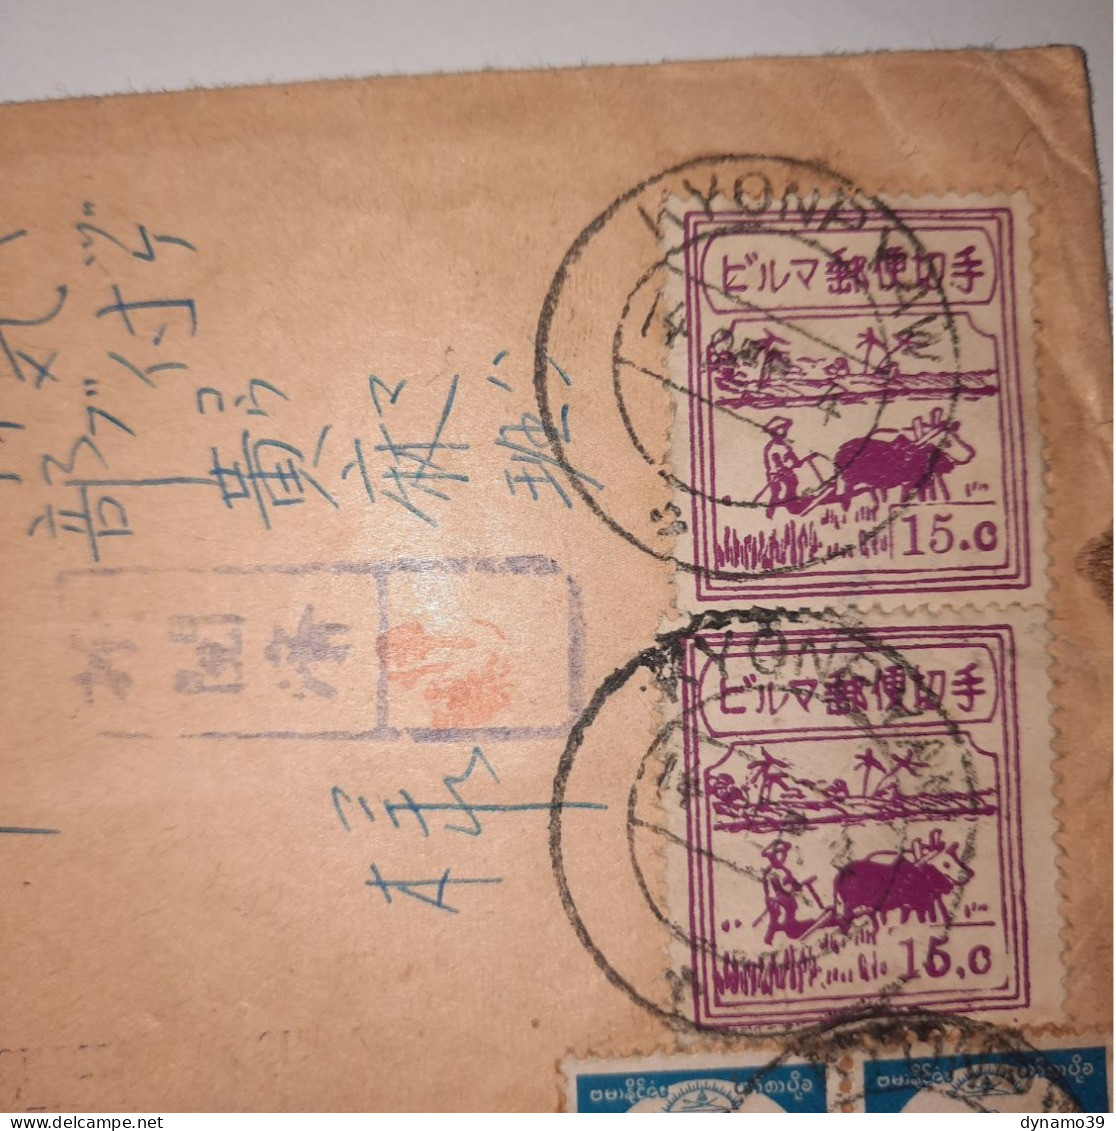 03K6 RARE - ANCIENNE LETTRE ENVELOPPE BIRMANIE KYON PAW INDOCHINE 1945 CACHET - Autres - Asie